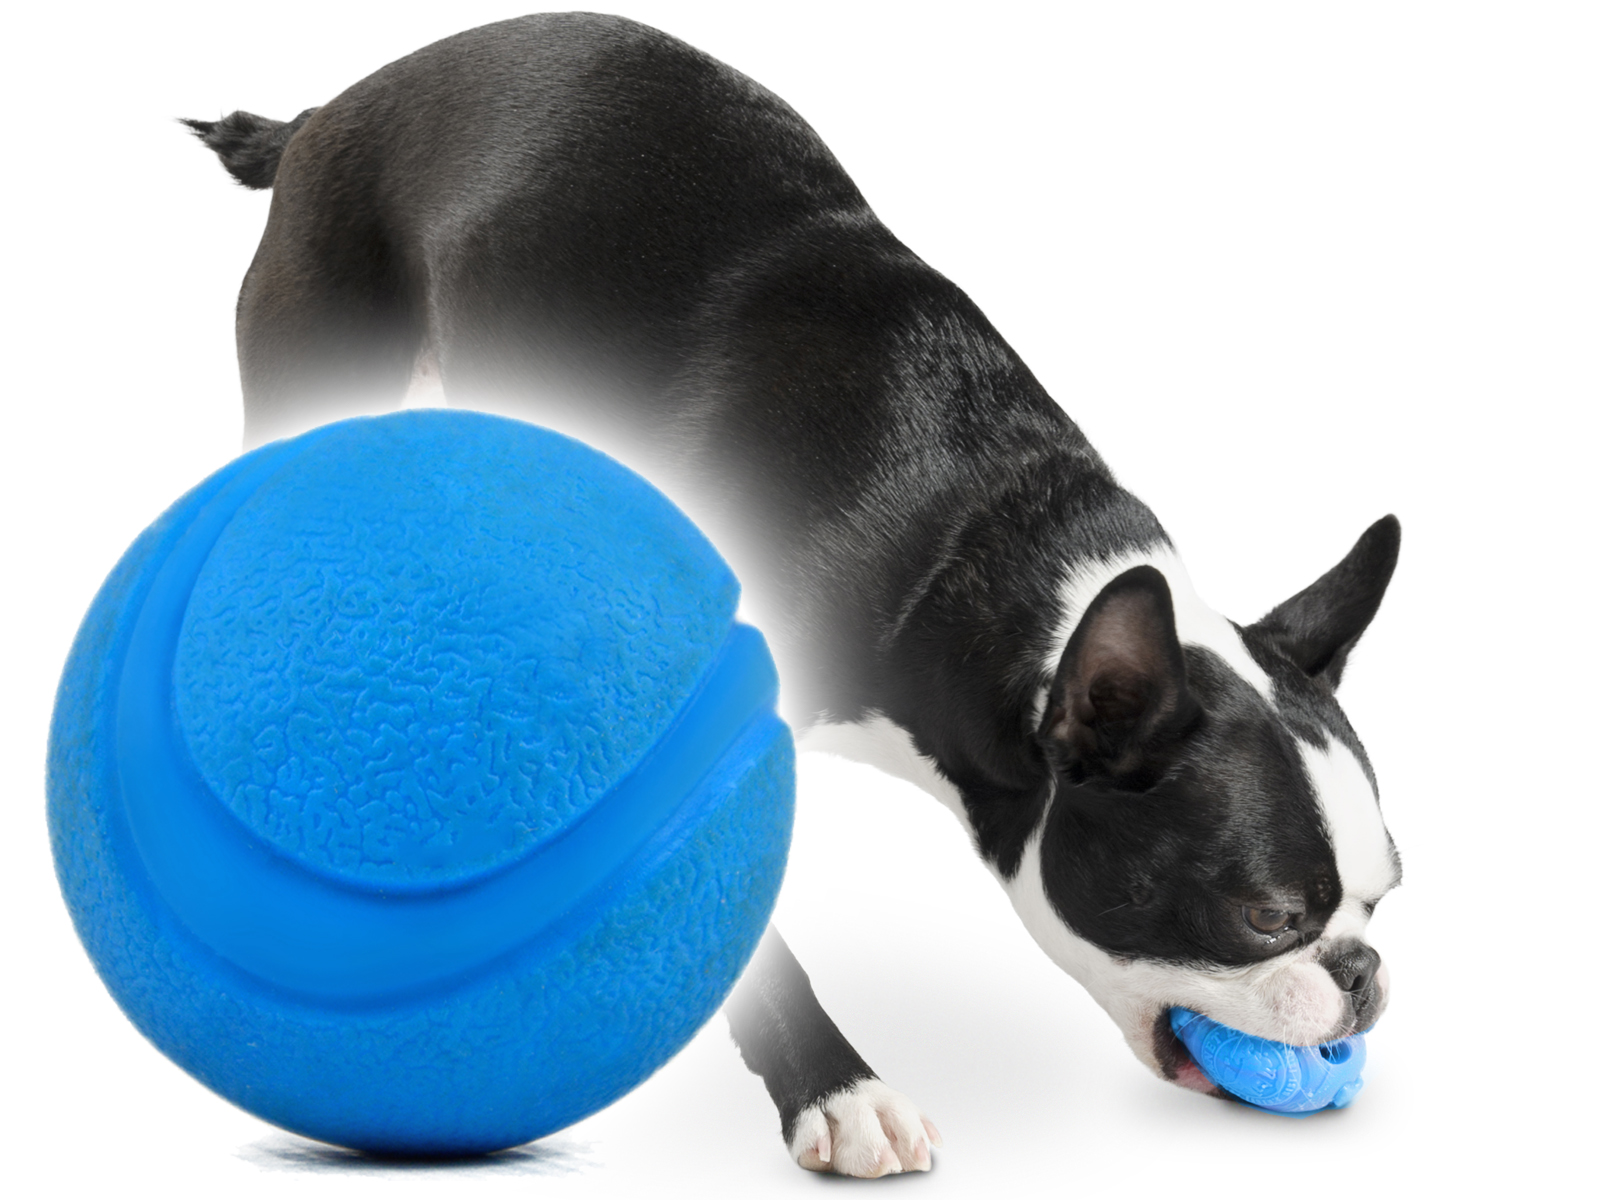 Игрушка Апорт для собак. Мяч апортировочный для собак. Doog игрушка для собак апортировочная "Elwood". Резиновые шарики на ноги собаки. Апорт для собак